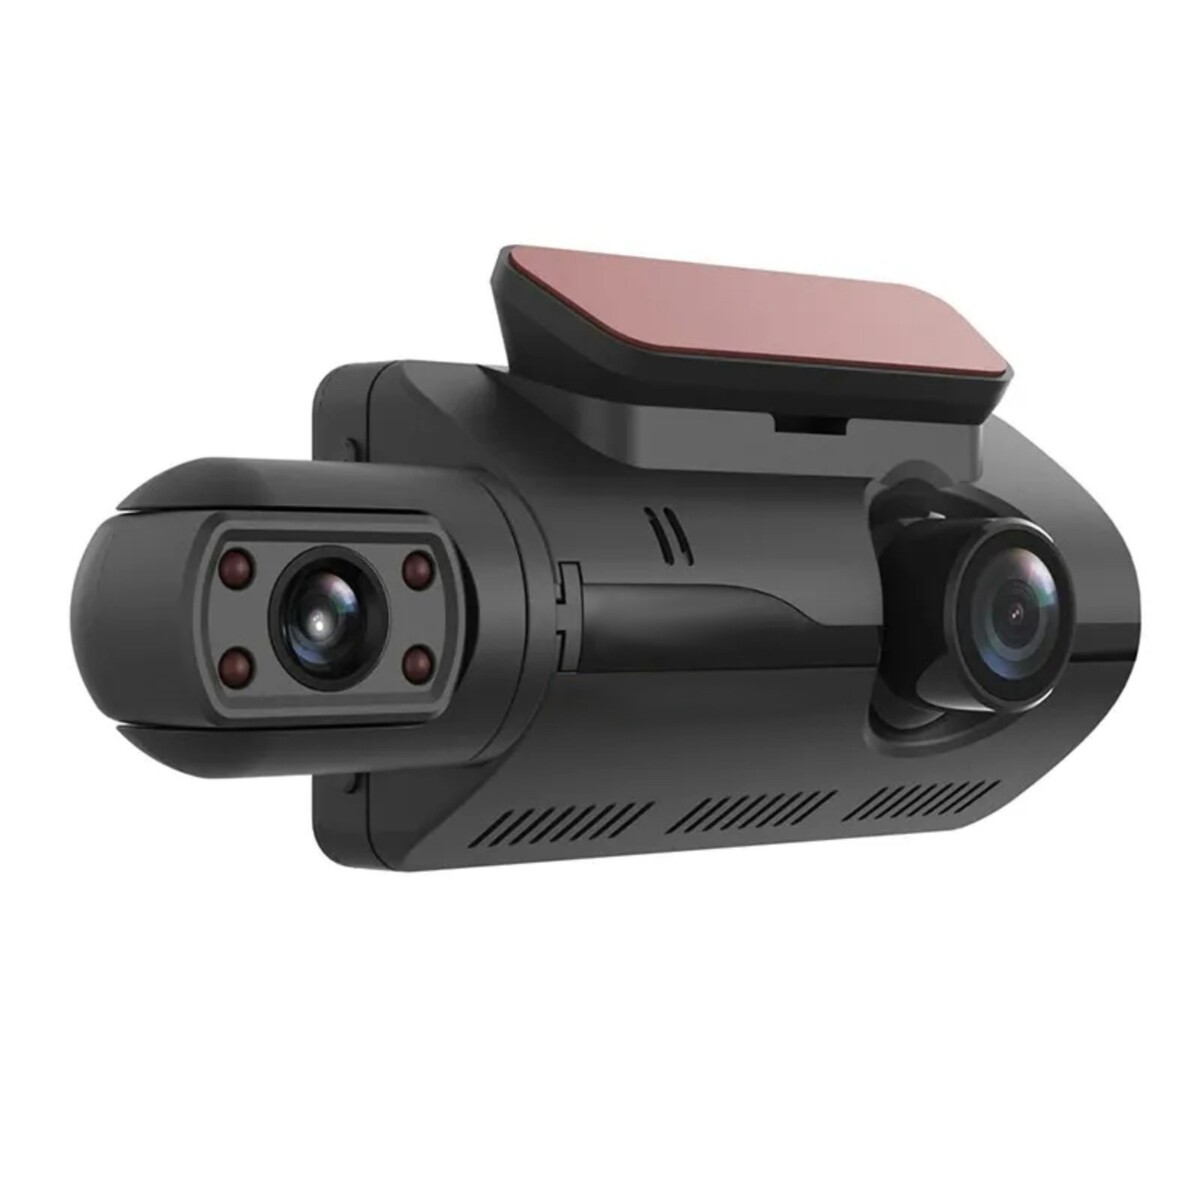 Видеорегистратор, 3 камеры, fhd 1080, ips 3.0, обзор 120° видеорегистратор с радар детектором playme vega